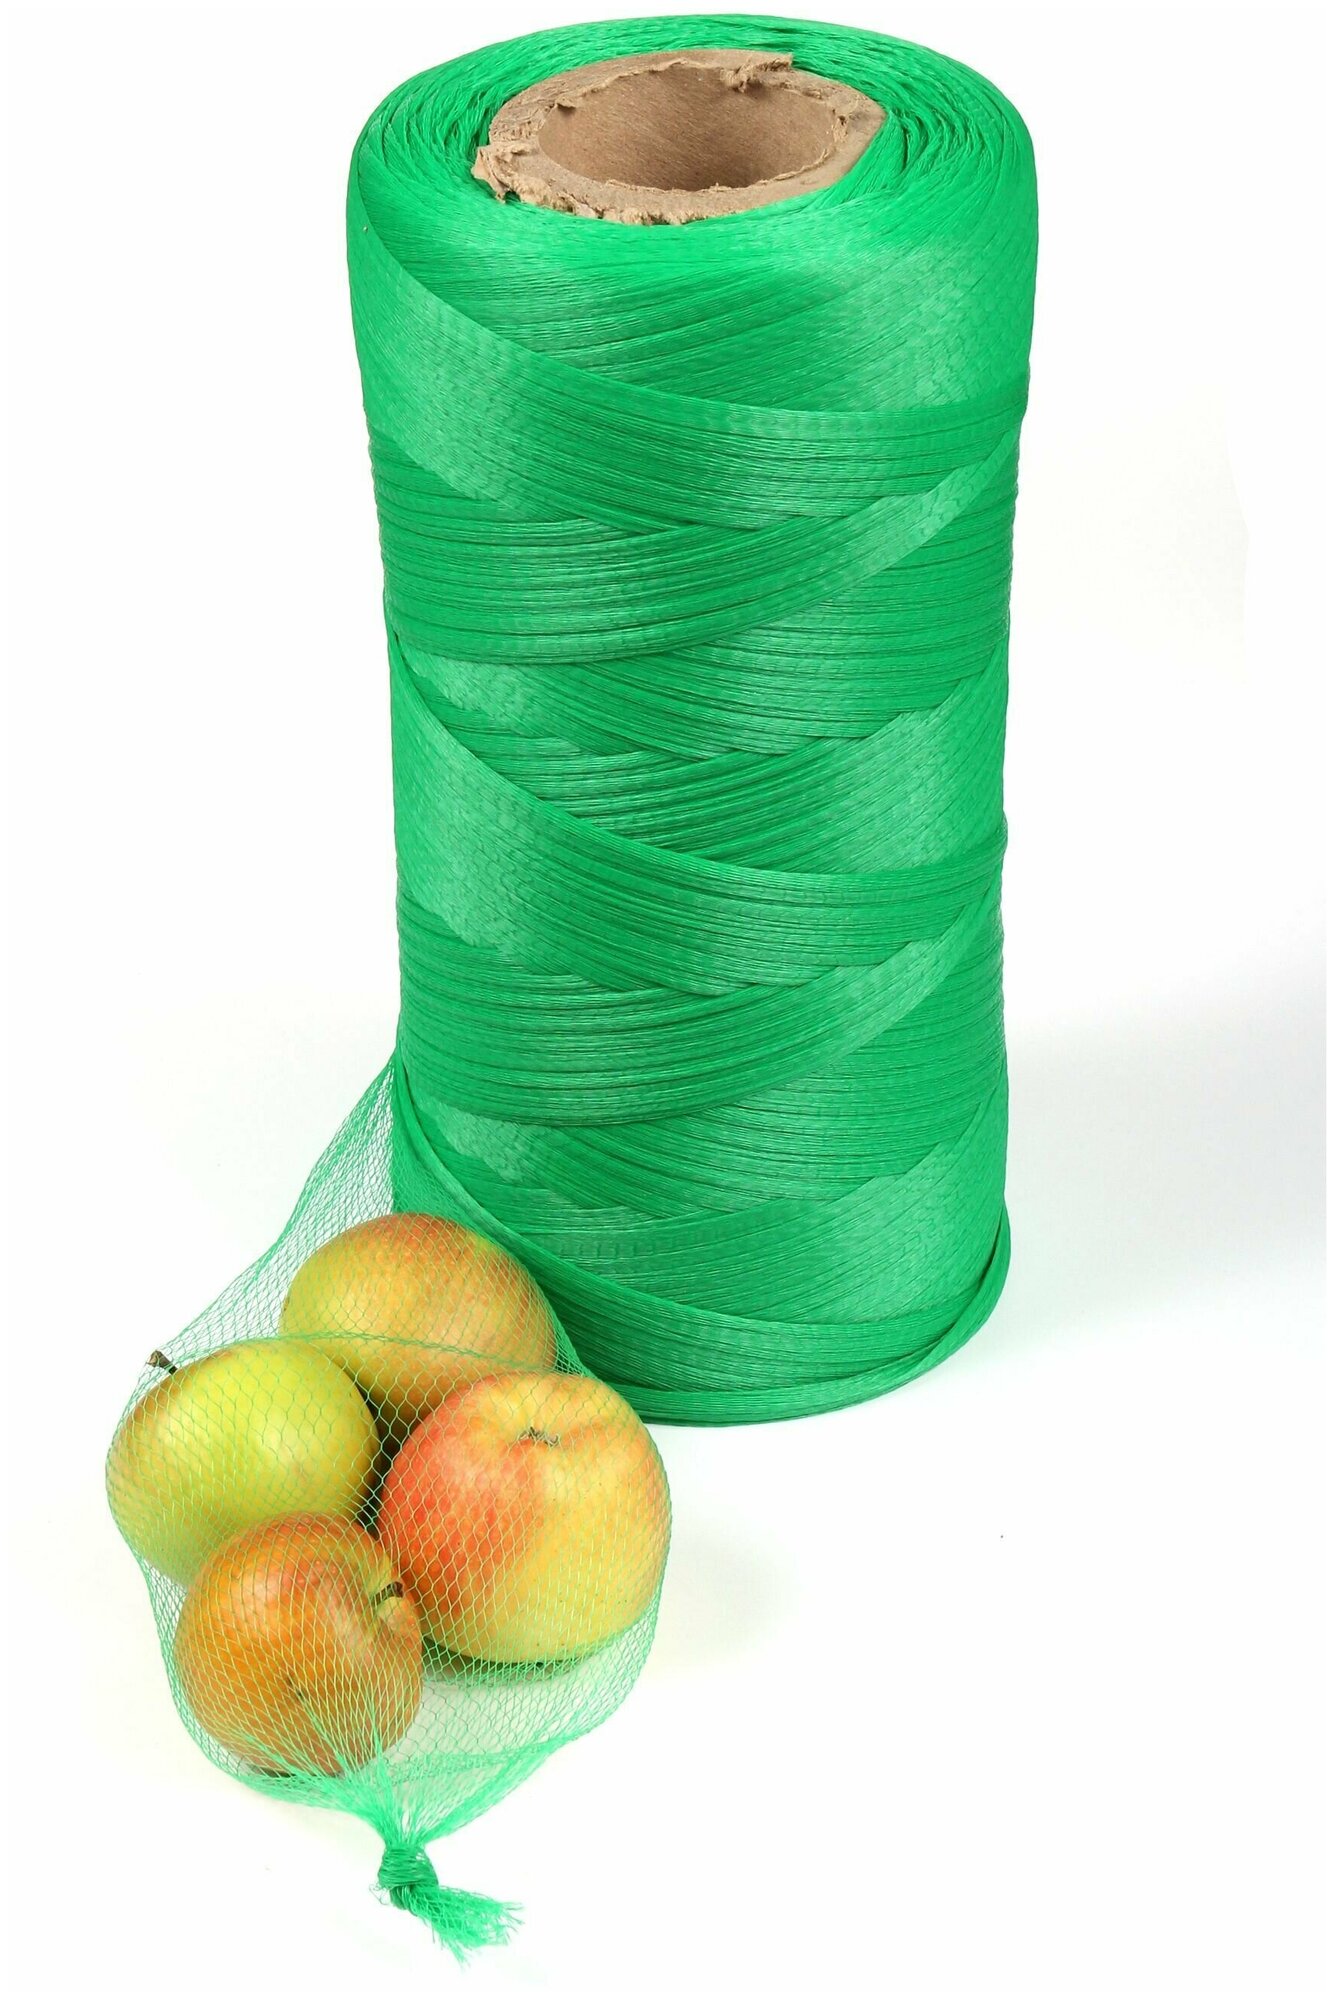 Сетка для овощей фруктов продуктов упаковочная / пакет 500м ячейки 5х5мм зеленая